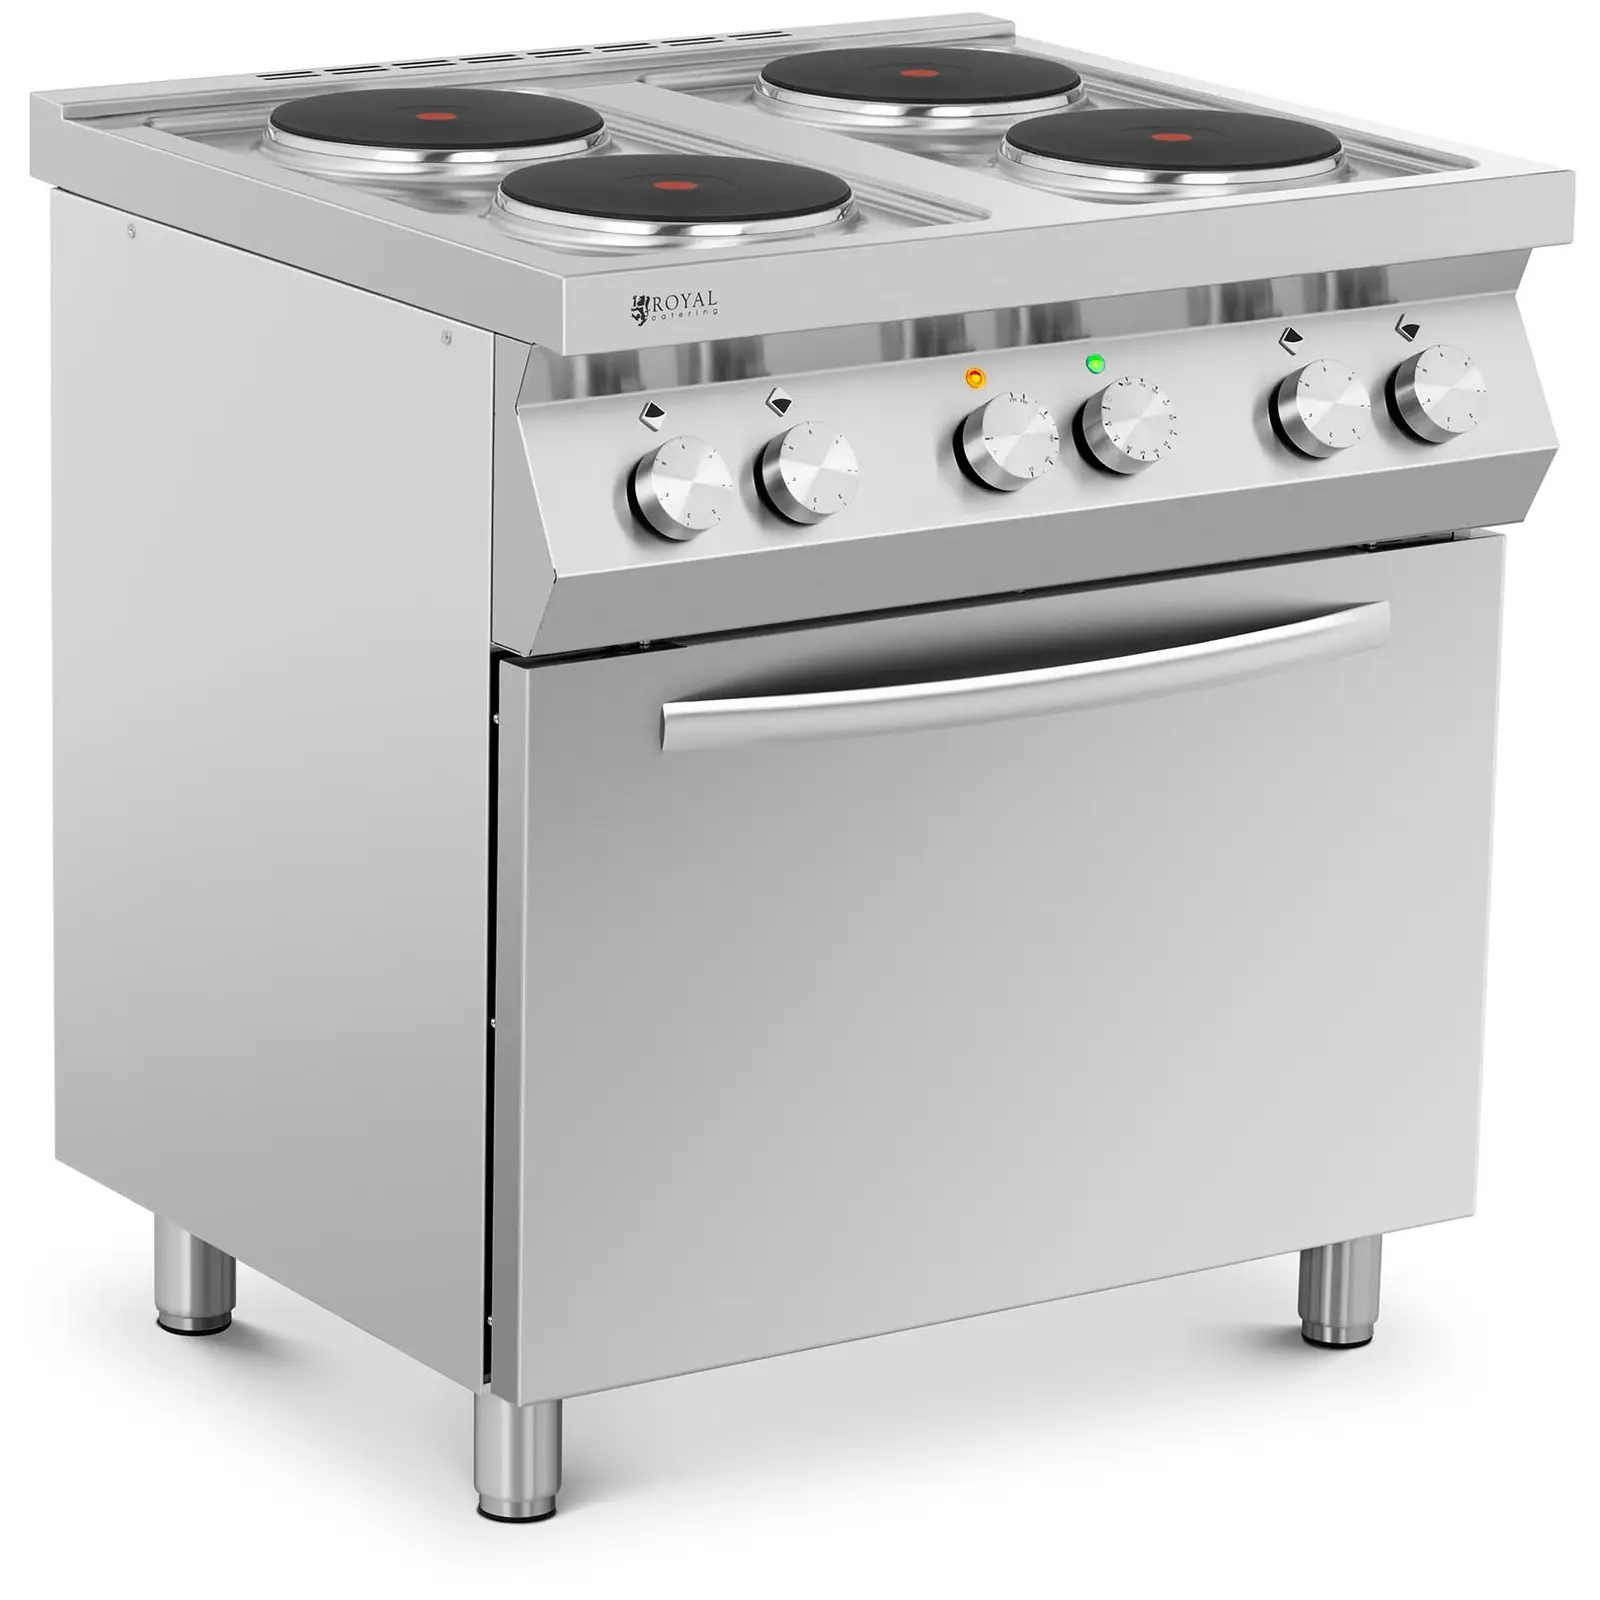 Cucina elettrica professionale - 13.400 W - Piano cottura - Con forno a convezione